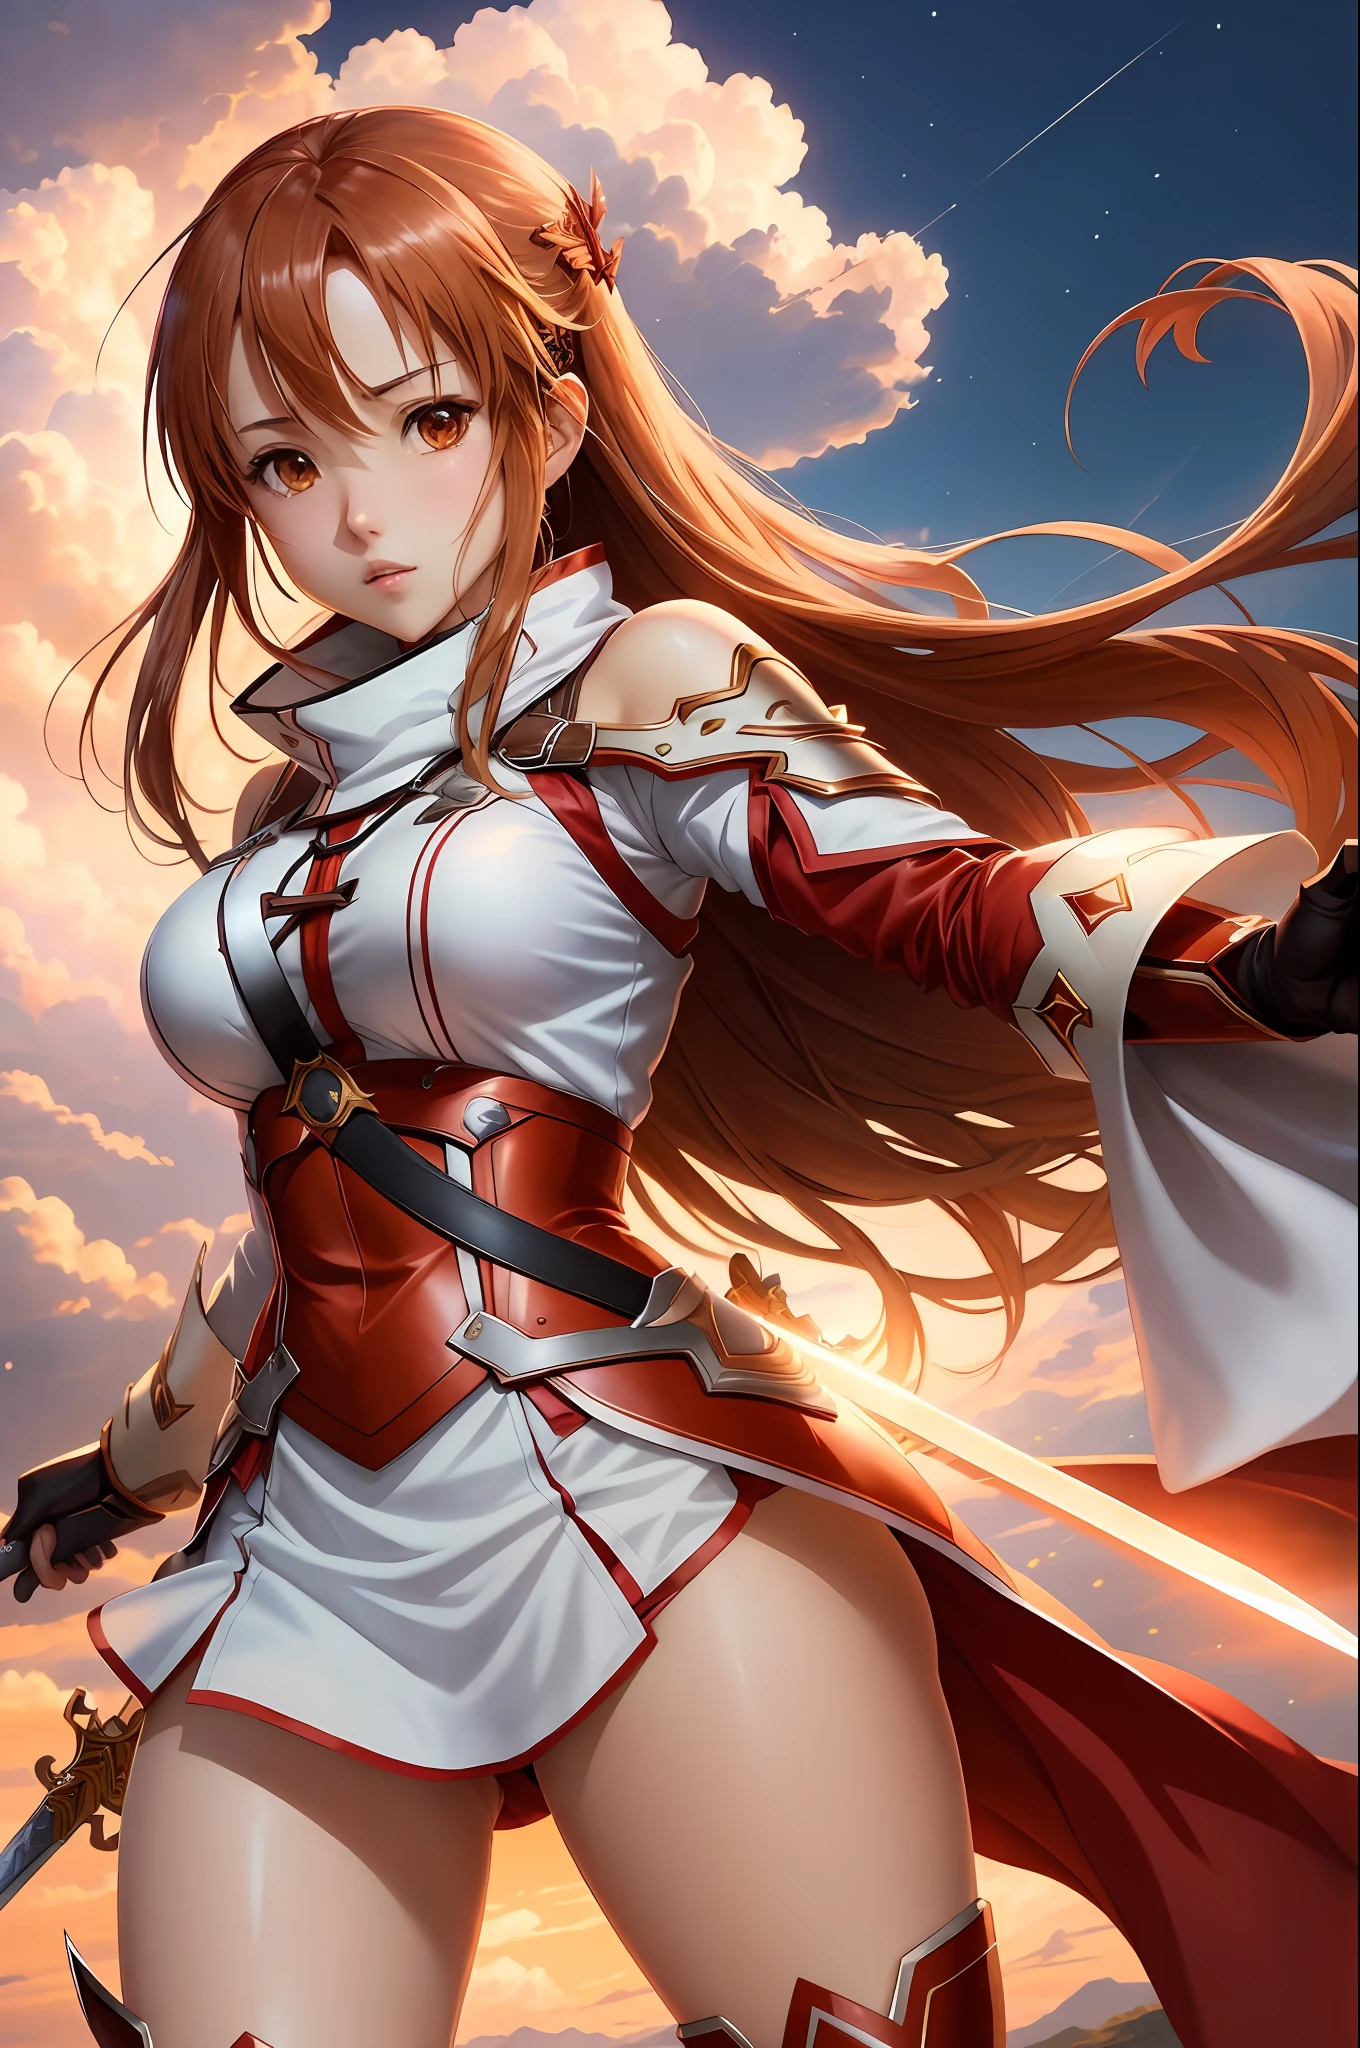 (стиль: аниме, Лучшее качество), Асуна Юки из Sword Art Online в динамичной позе с мечом, Отличительные черты лица, и красивый наряд. Сцена имеет поразительное визуальное воздействие., reminiscent of the стиль of Oh! Большой. большие груди